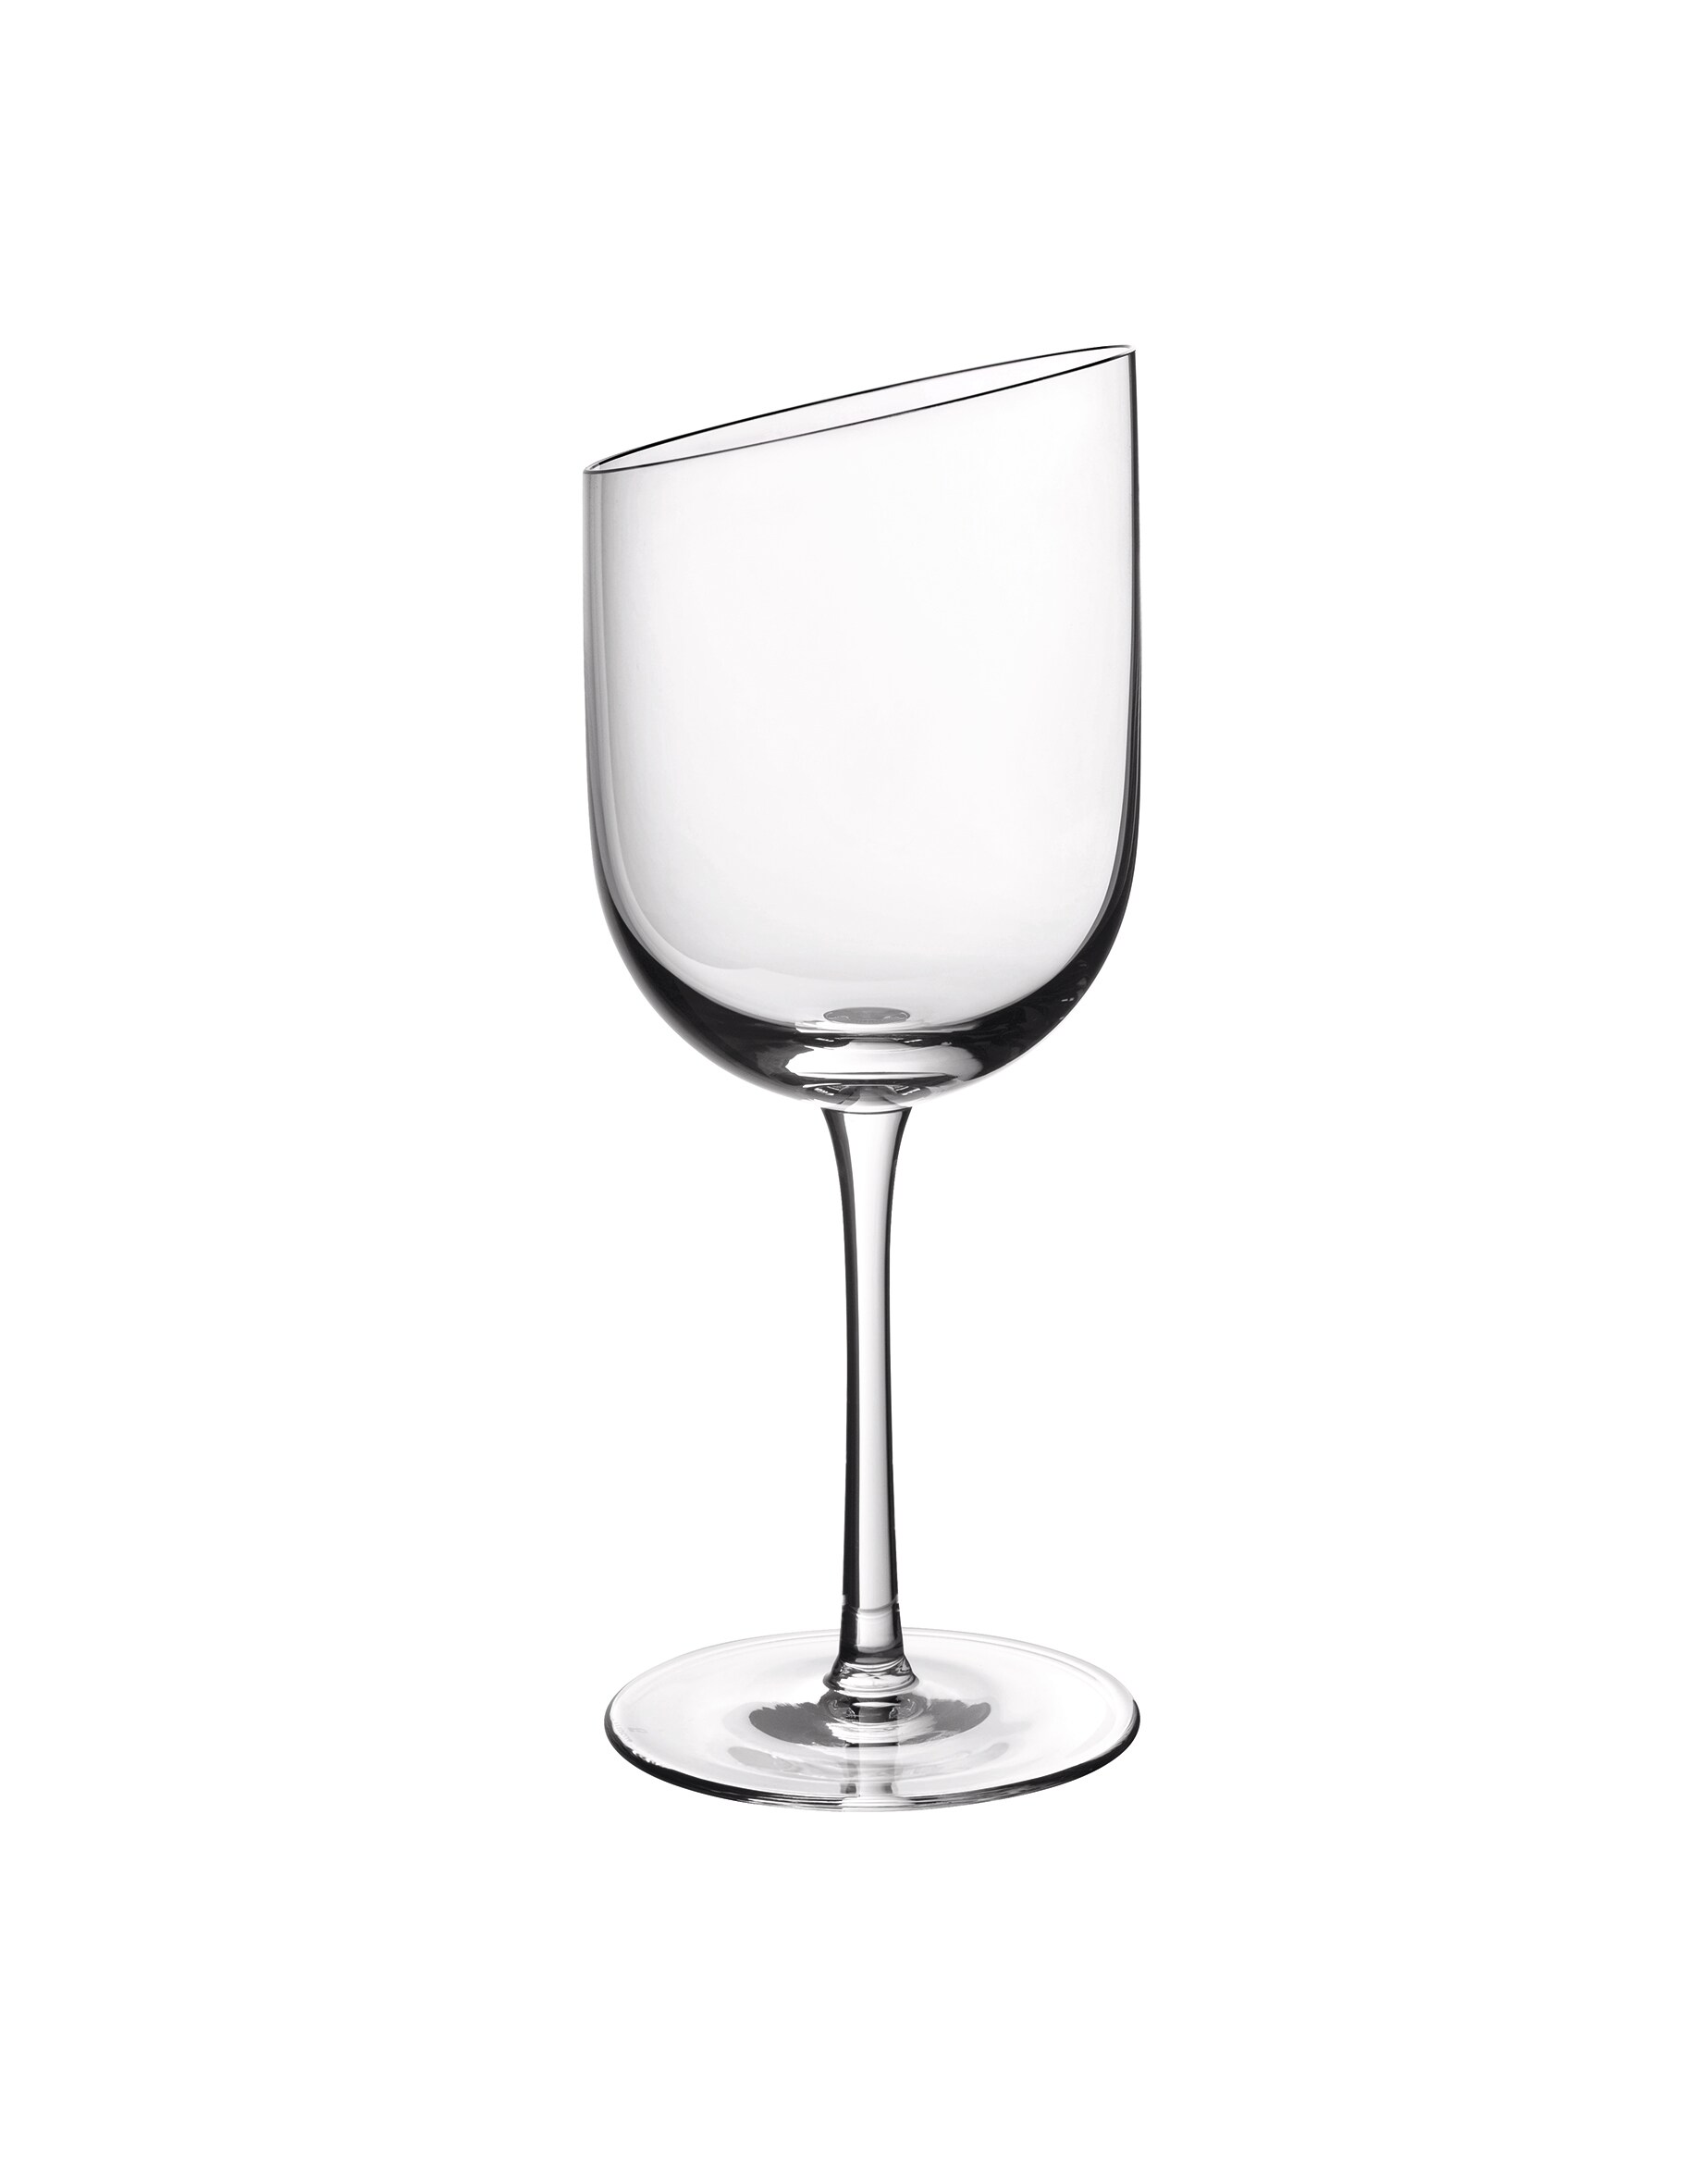 Набор бокалов для красного вина New Moon, 4 предмета Villeroy & Boch набор бокалов для красного вина new moon 4 предмета villeroy